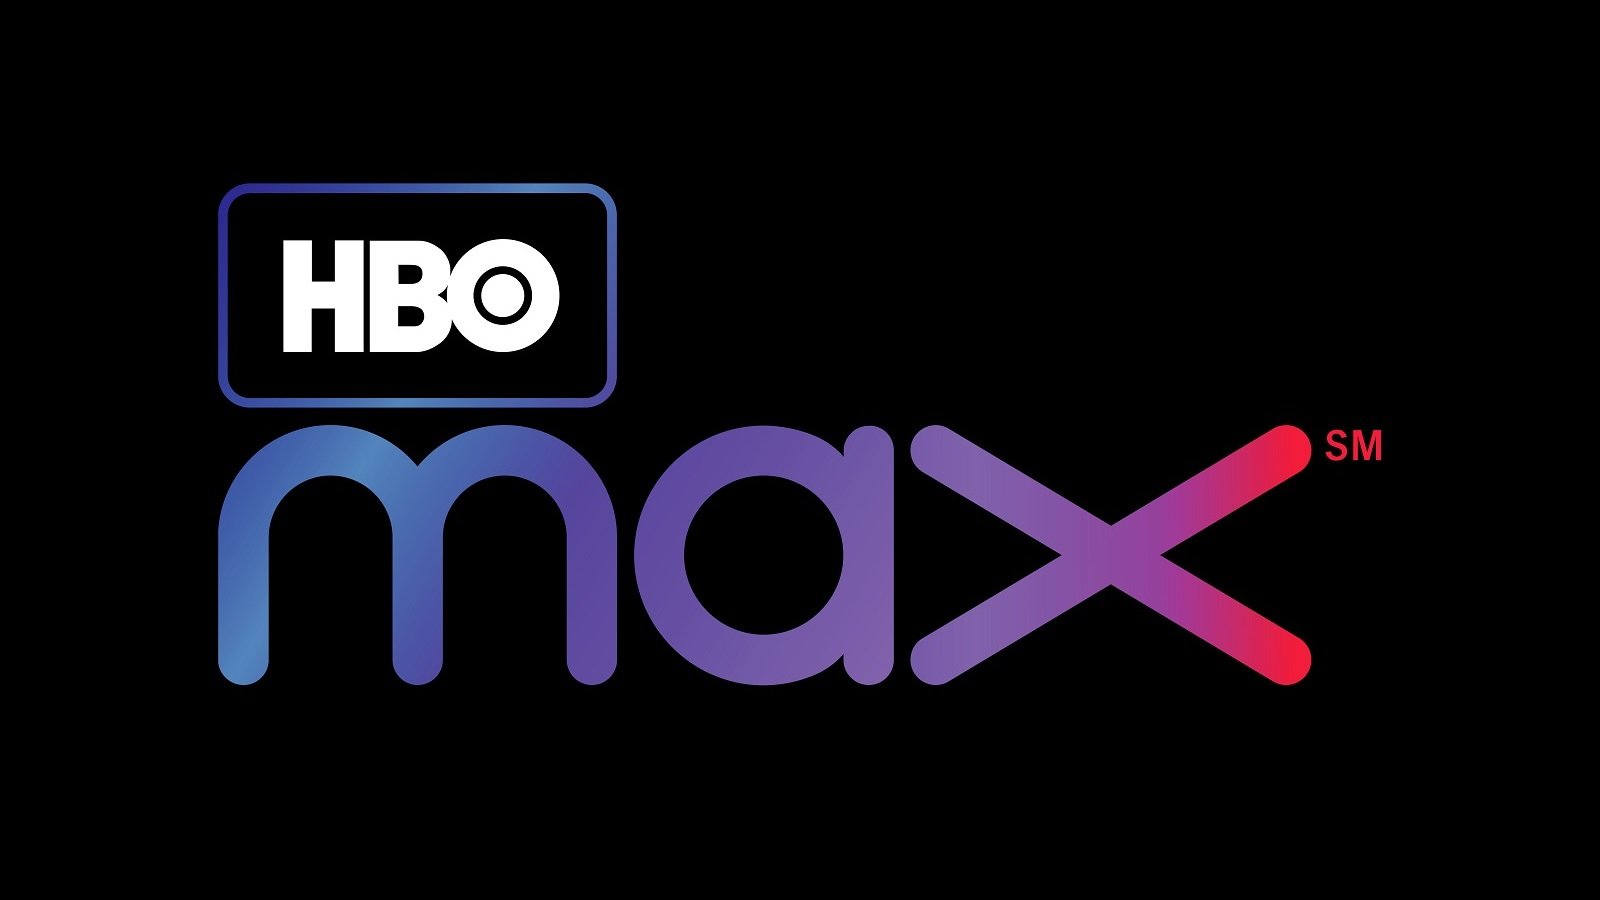 HBO Max é o novo serviço de streaming da WarnerMedia que contará com todas as produções da HBO, CW, DC e muito mais